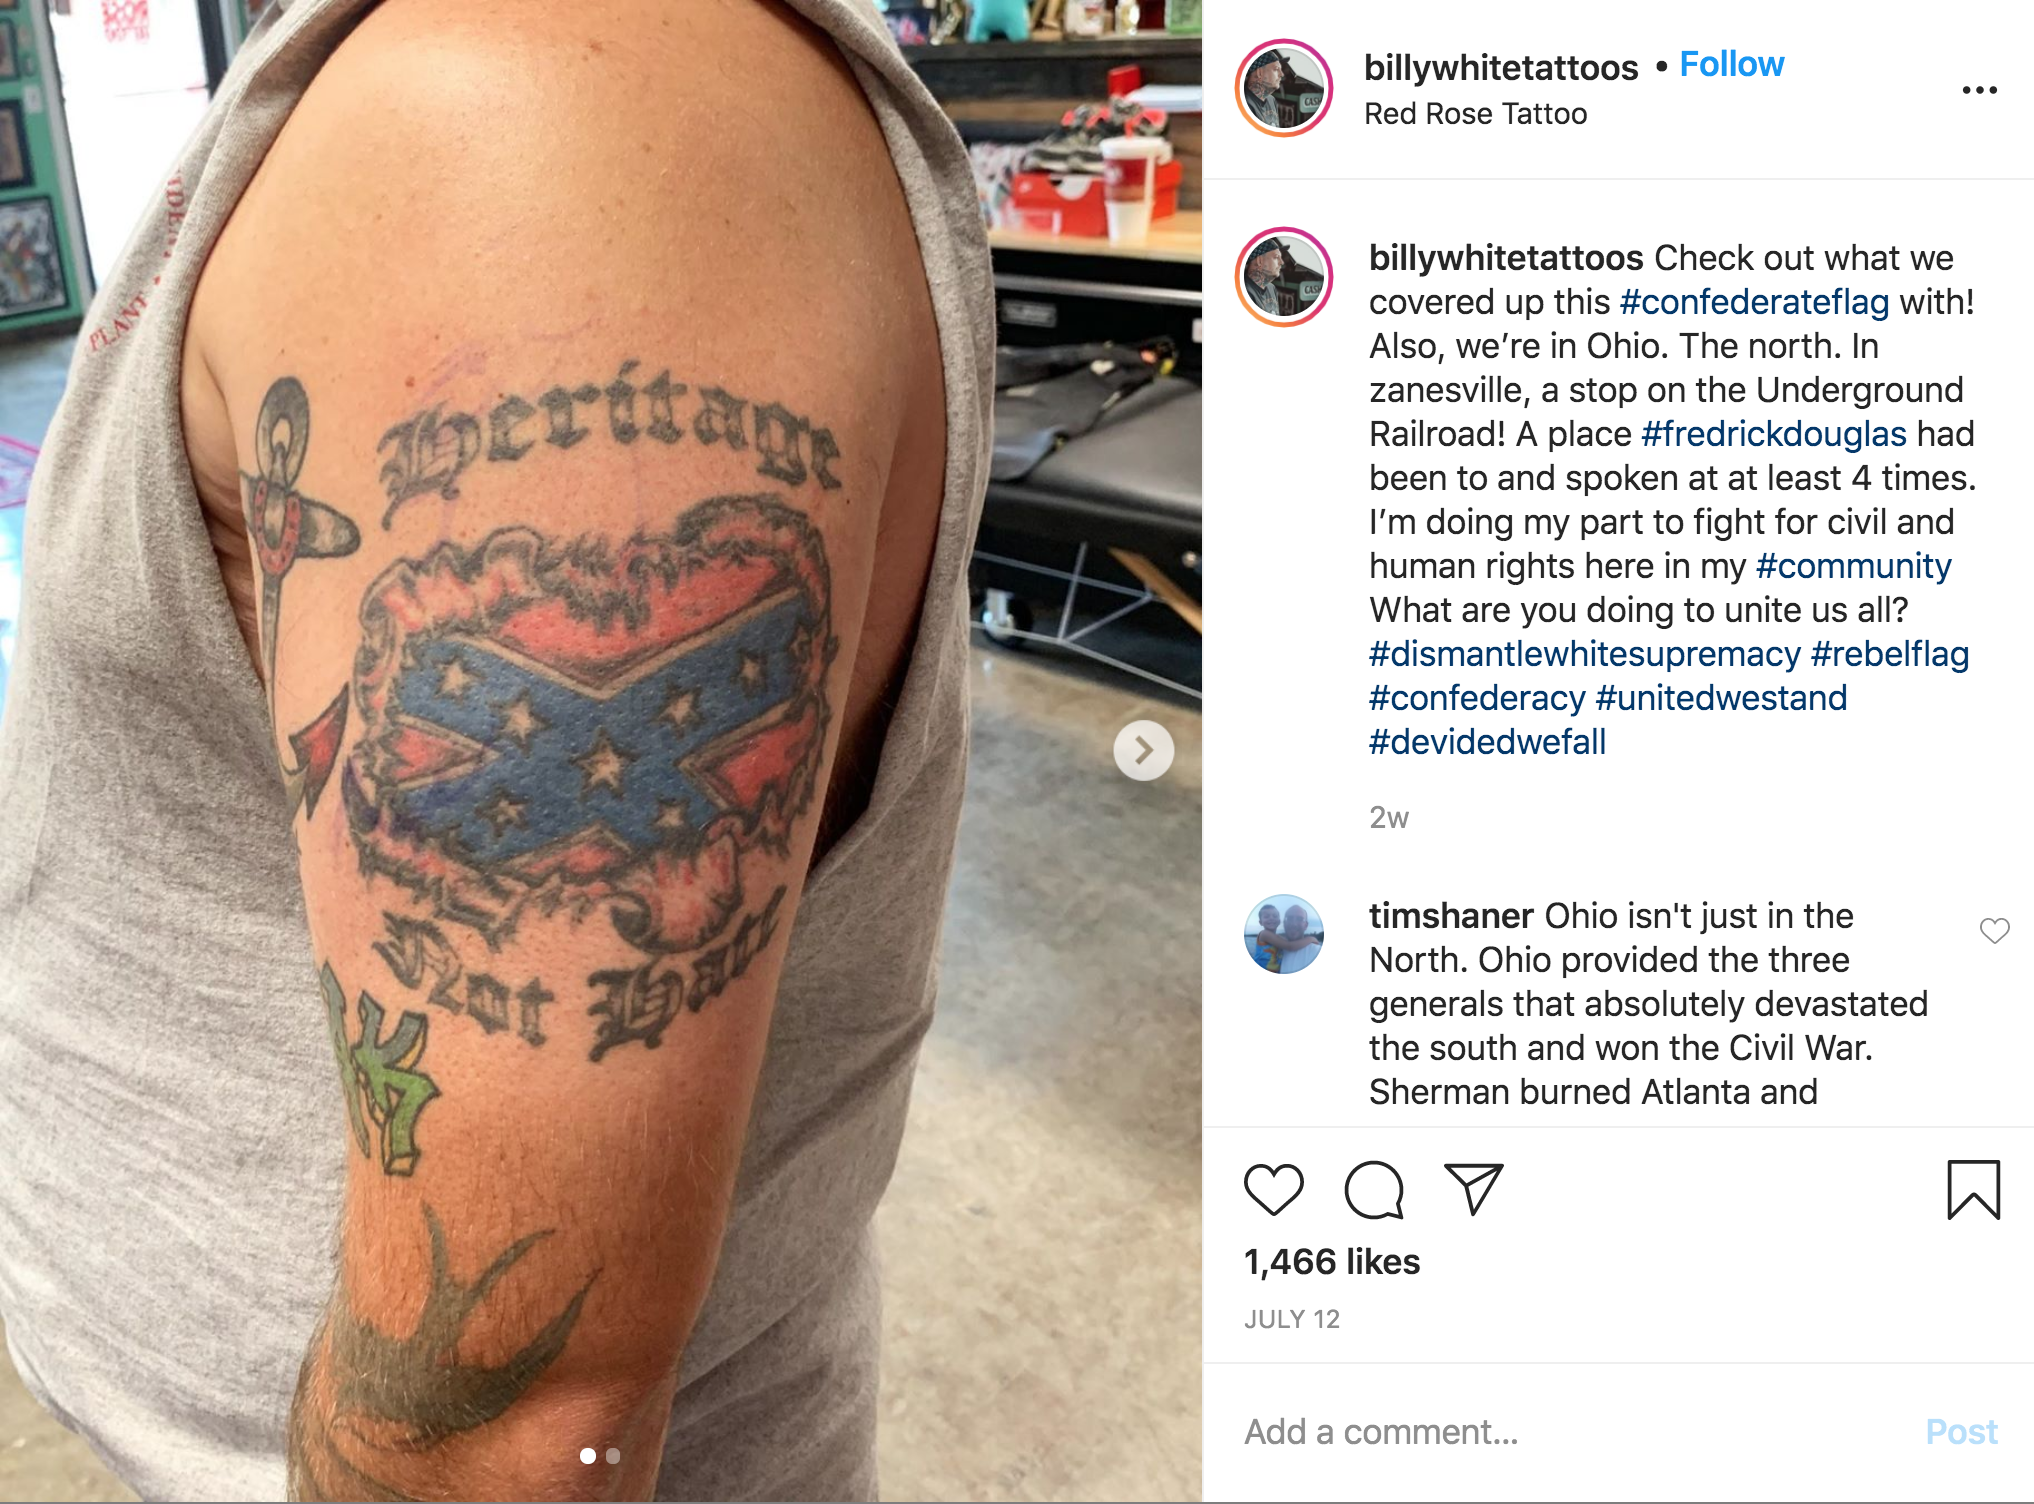 abu chi recommends tattoo shops in zanesville ohio pic